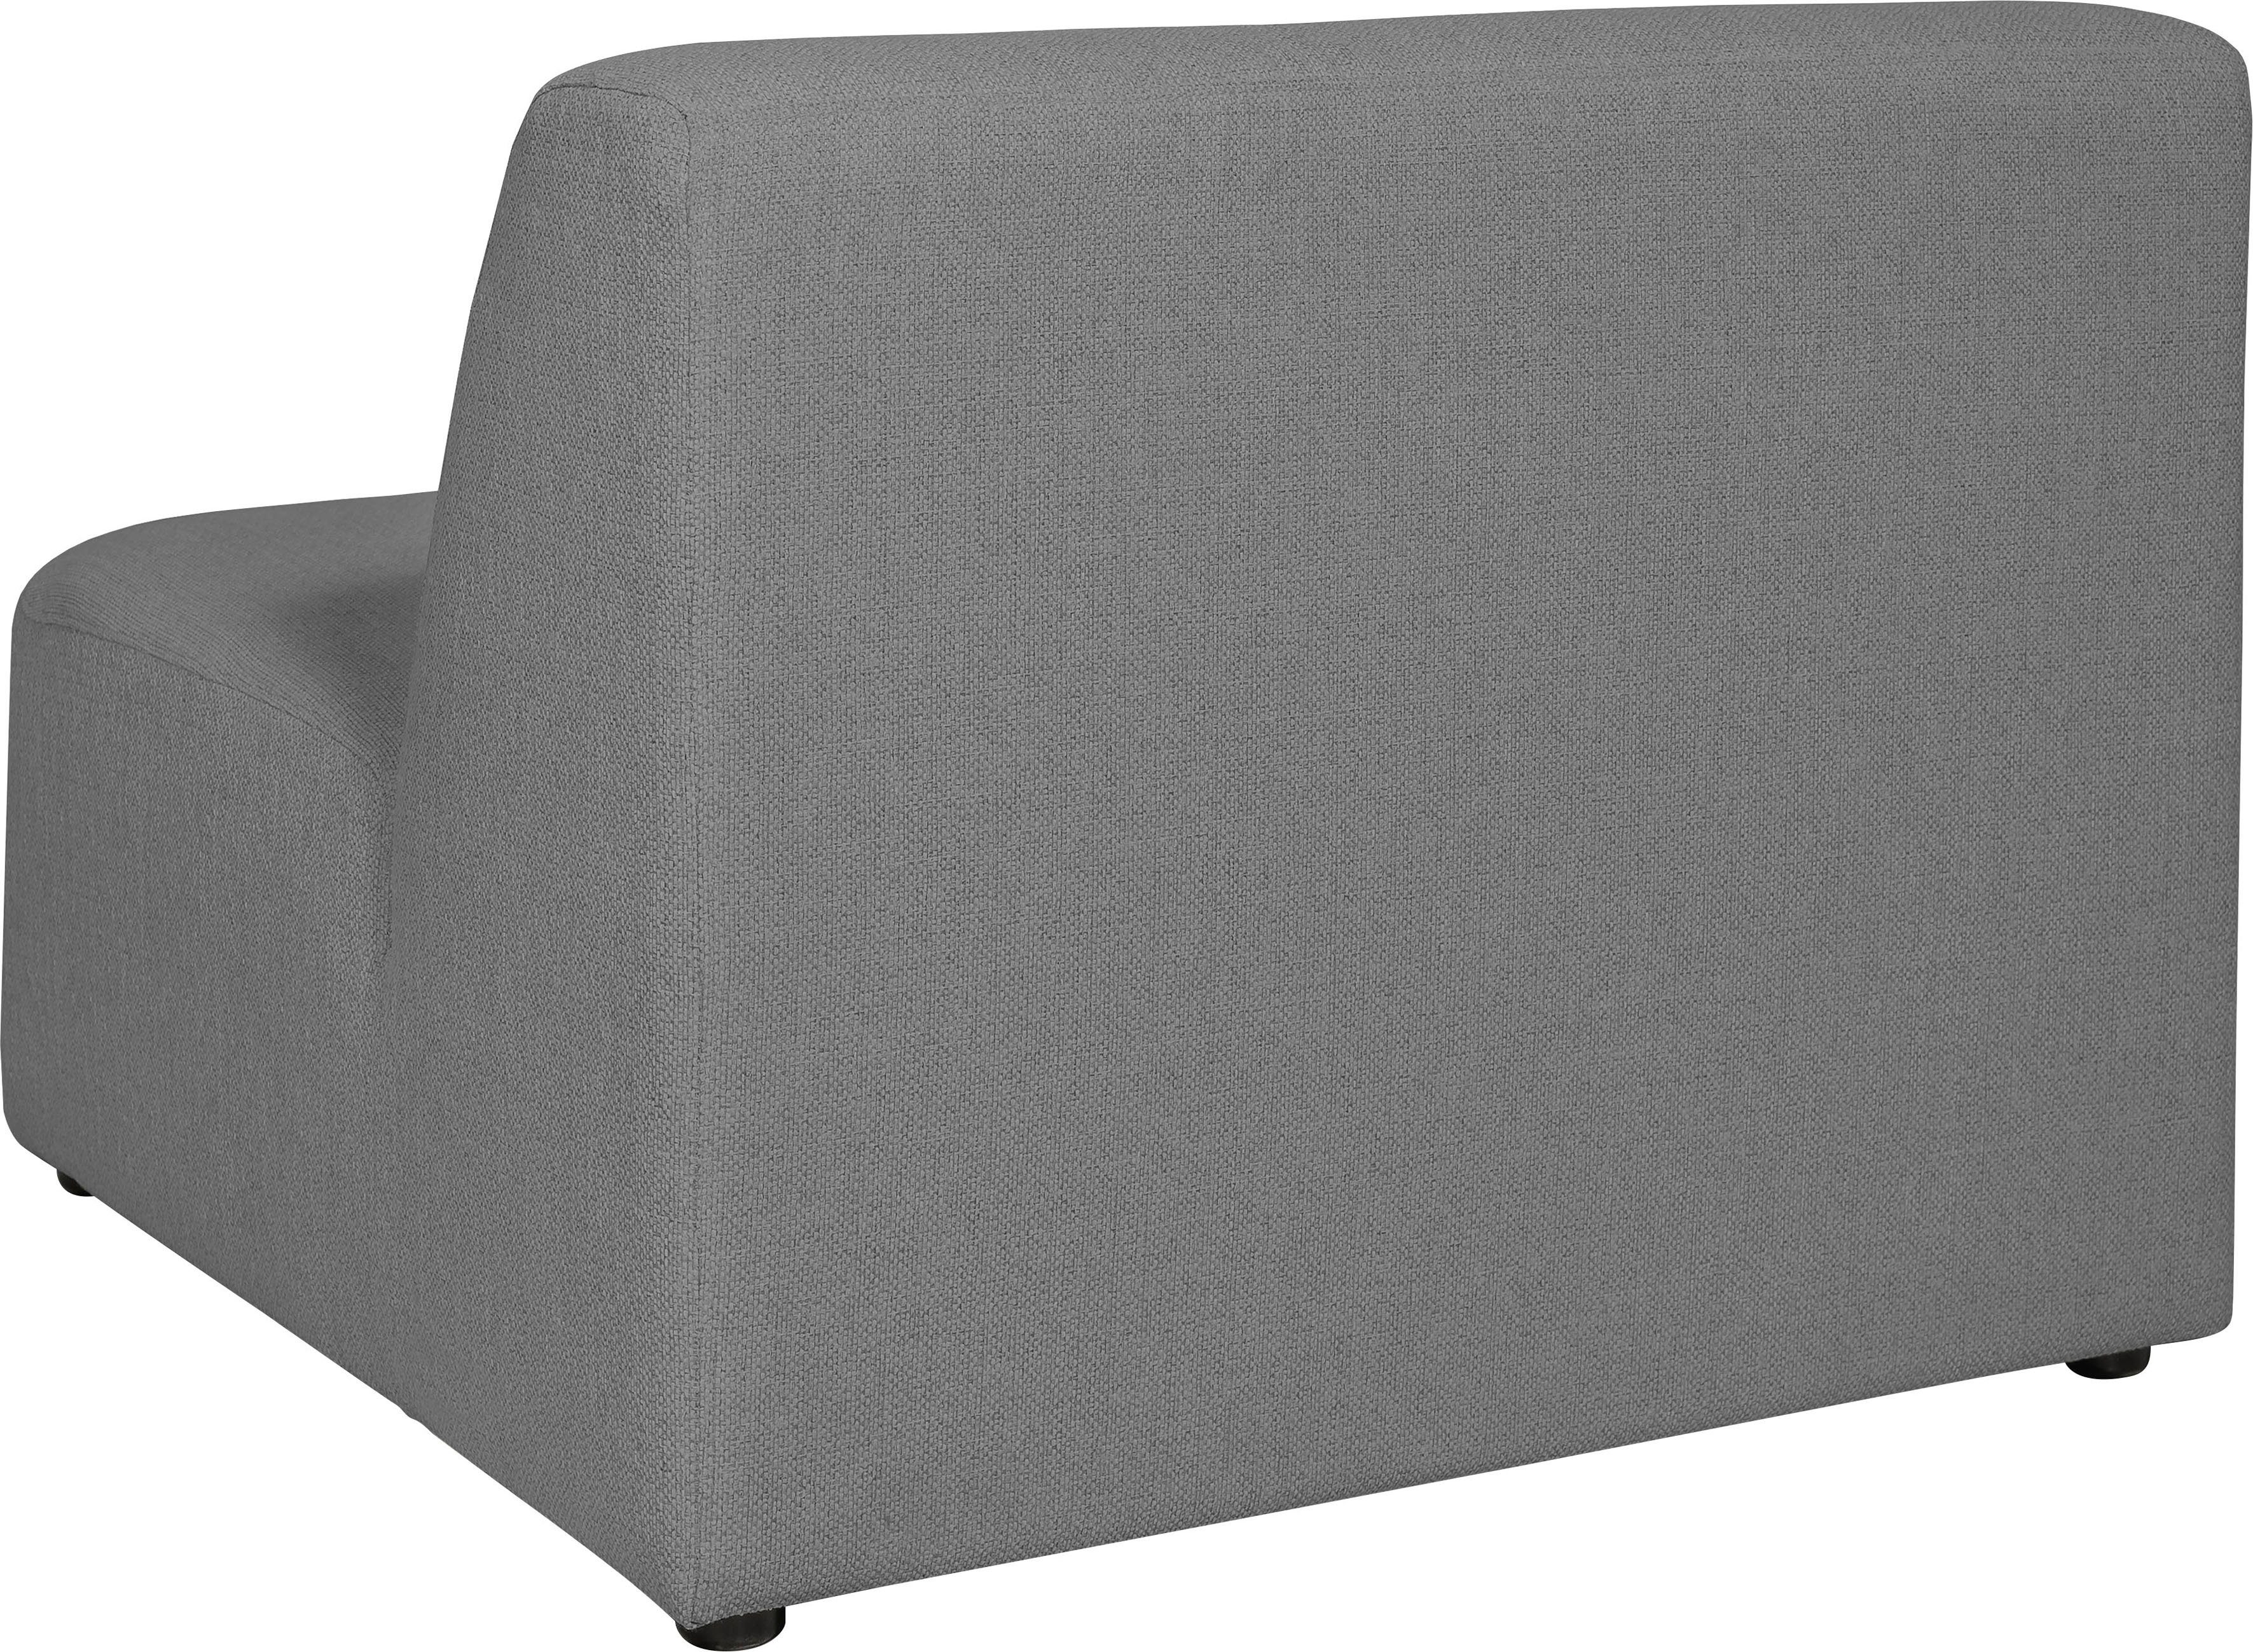 INOSIGN Sofa-Mittelelement grey Koa, Komfort, Proportionen angenehmer schöne